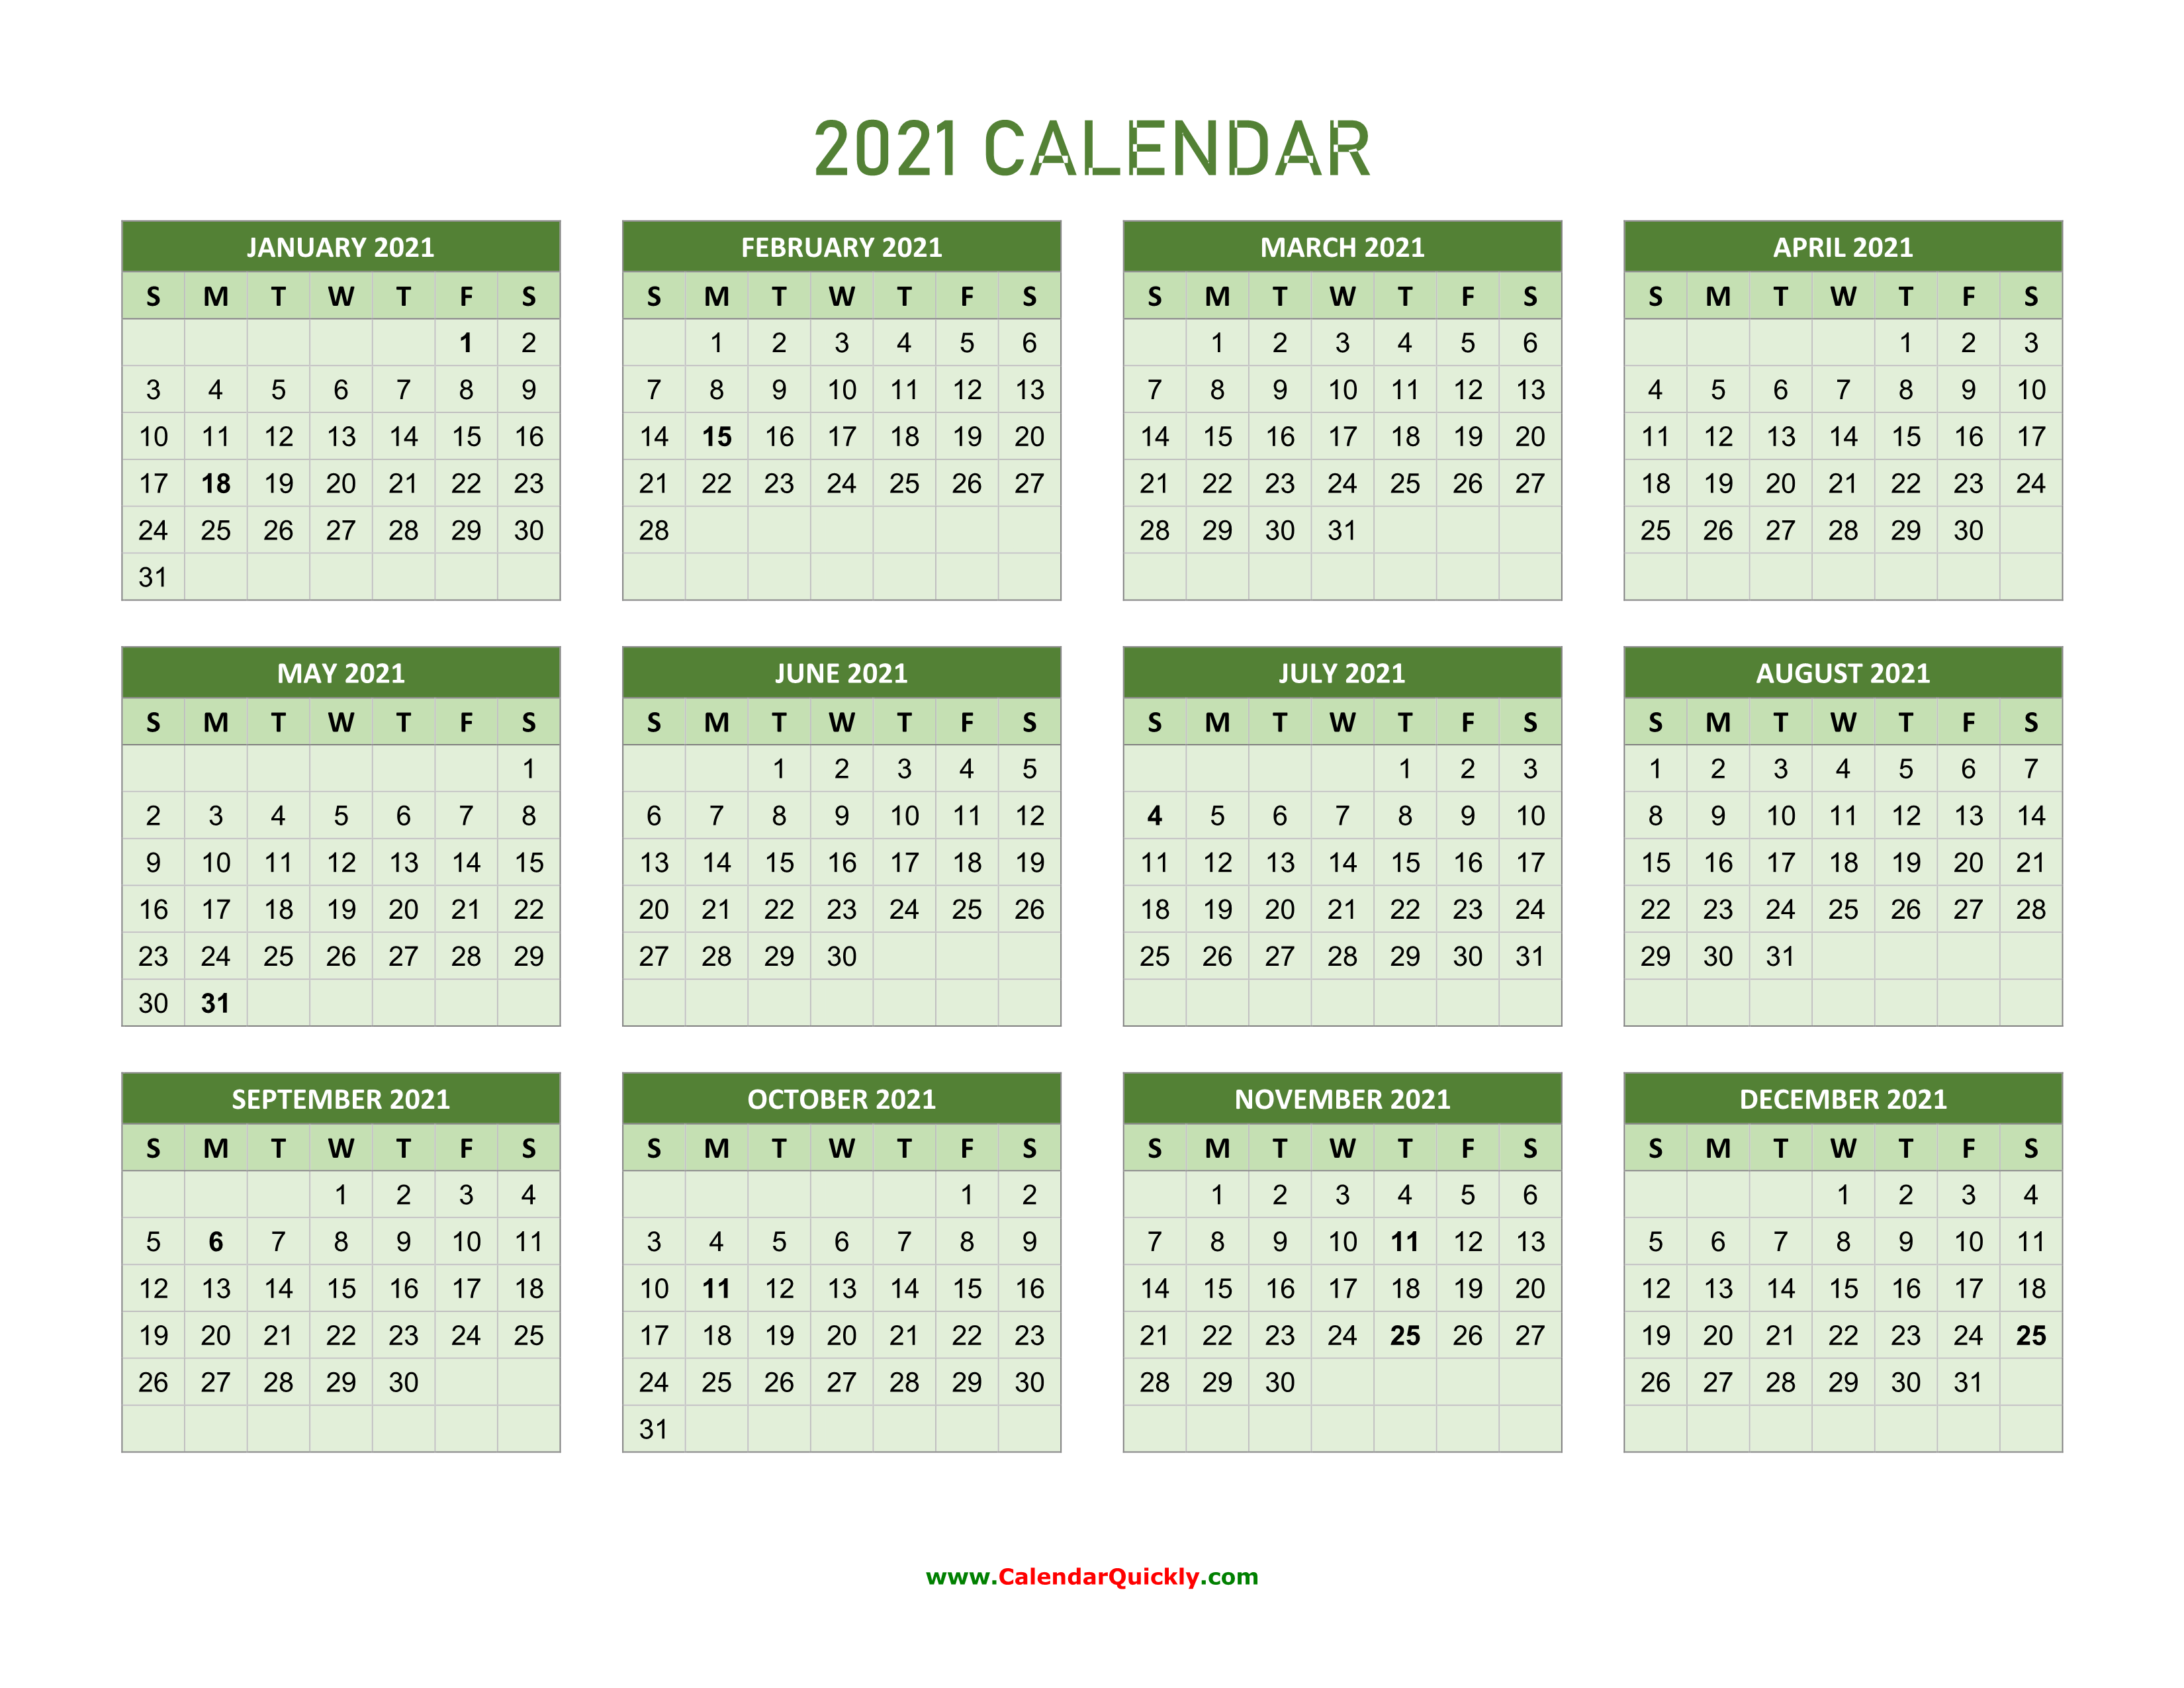 Сколько дней было в феврале 2024 года